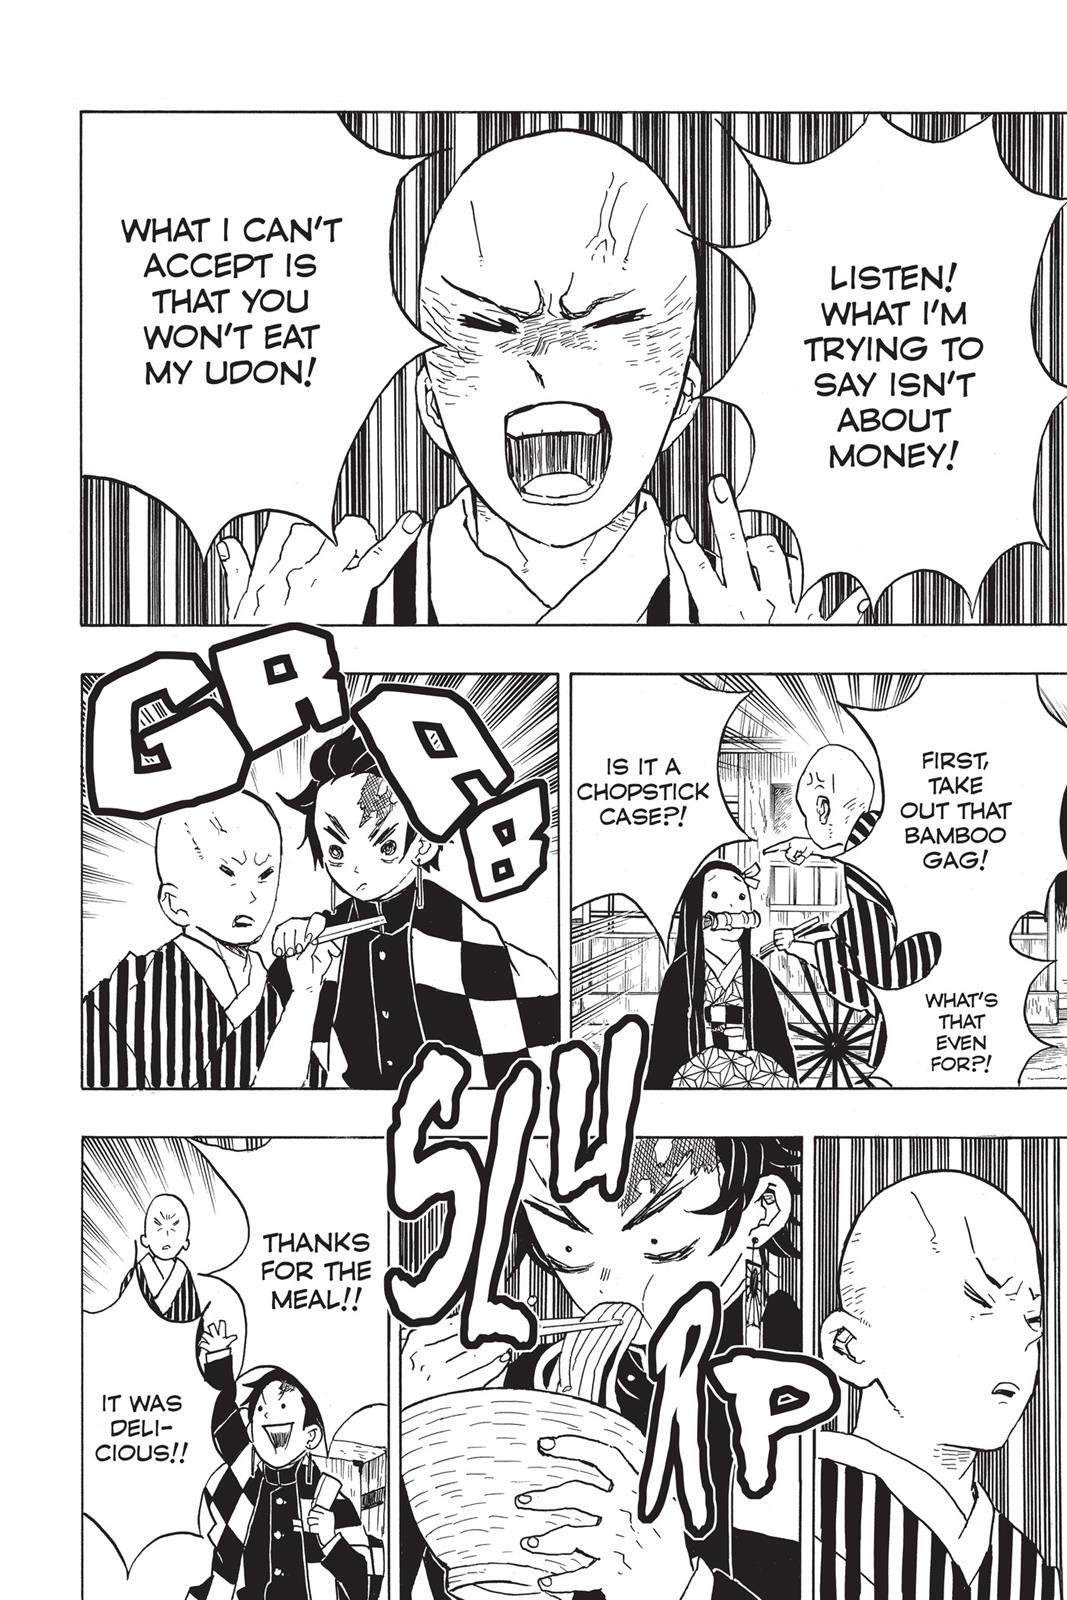 Demon Slayer Manga Manga Chapter - 15 - image 2